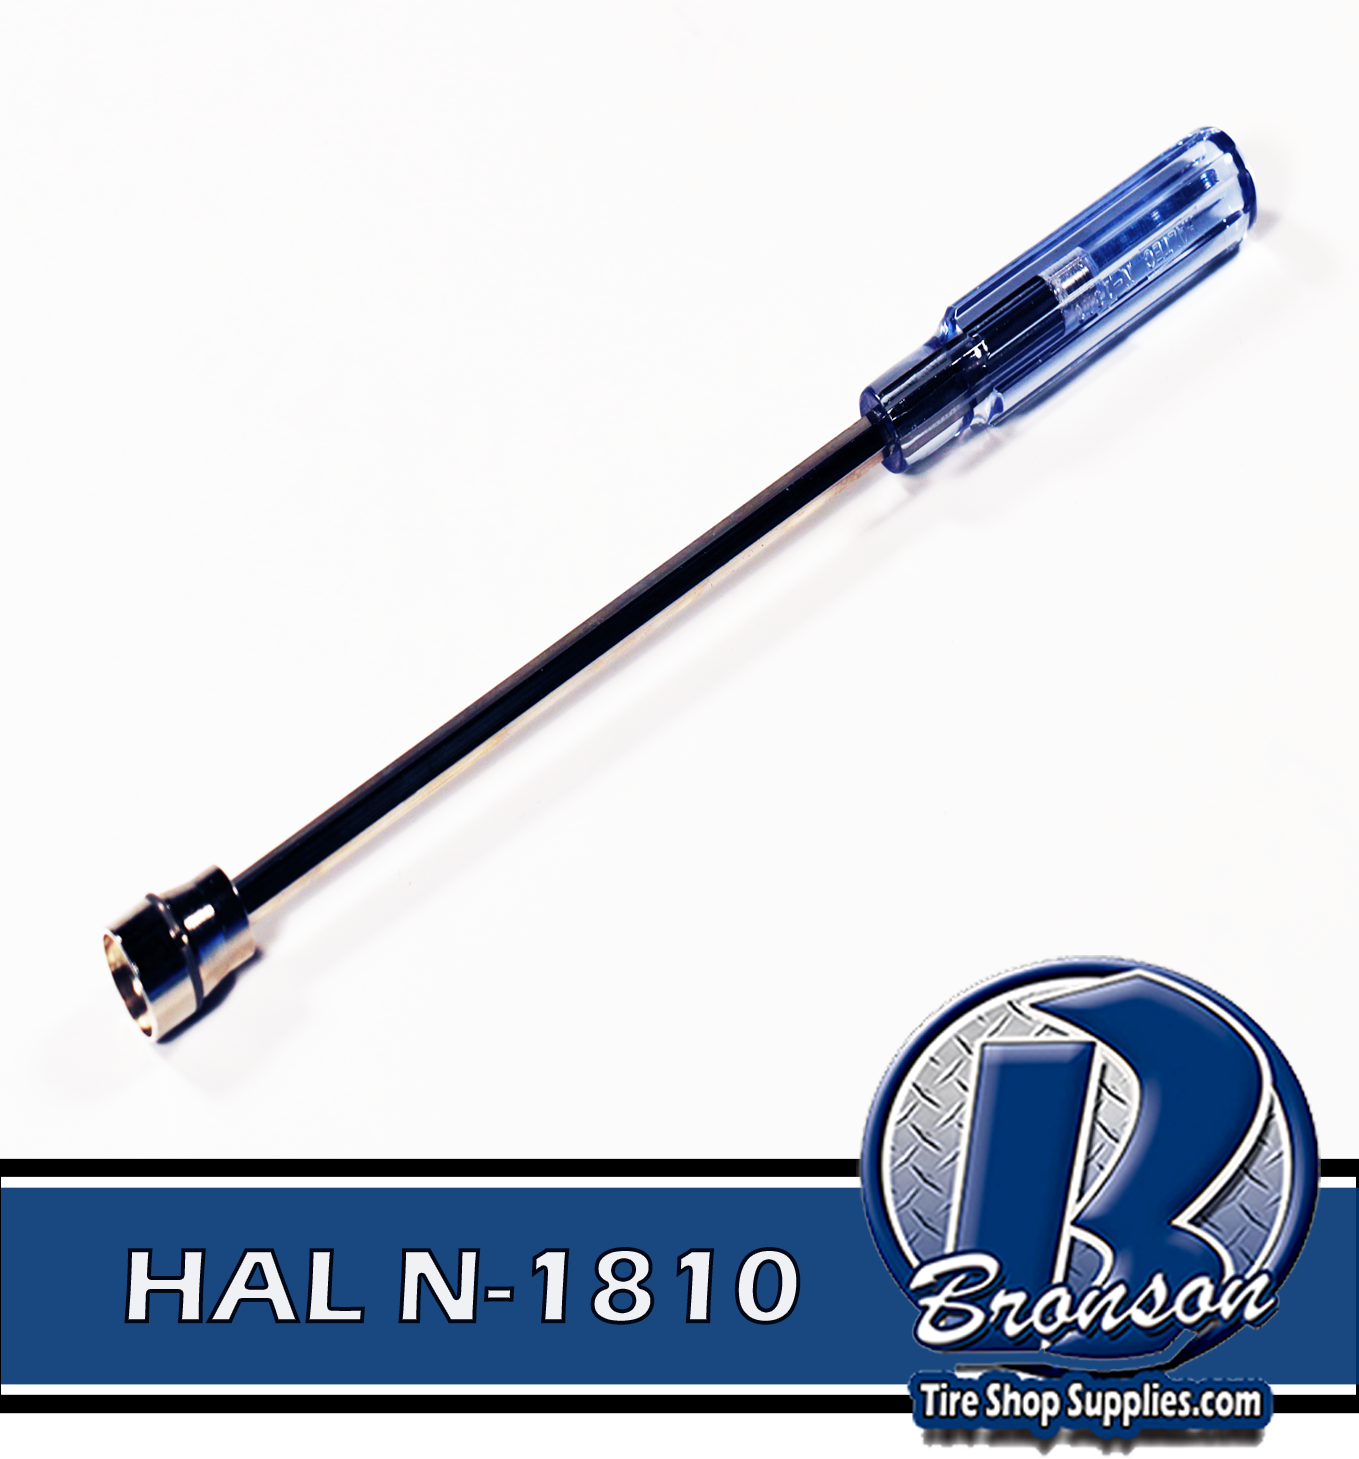 HAL N-1810 Large Bore Hex